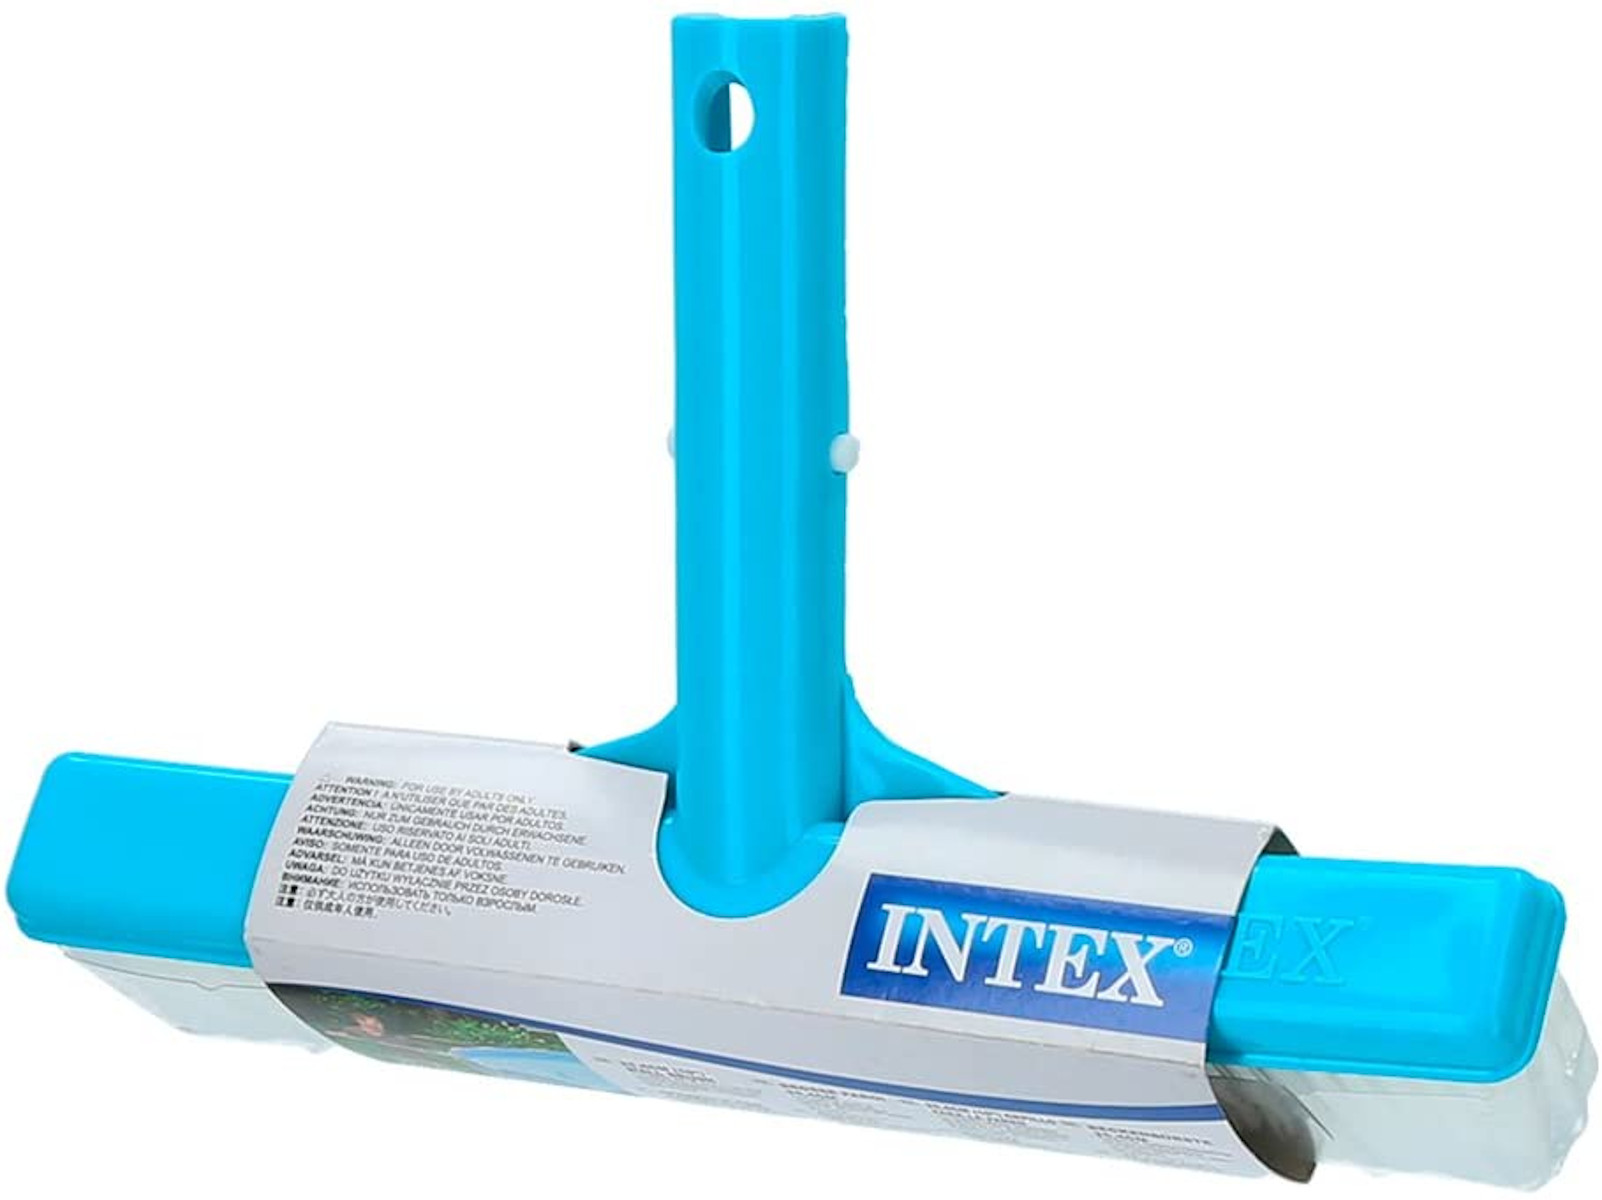 INTEX INTEX 29052 - Pool Bürste Pool mehrfarbig Zubehör, 254mm